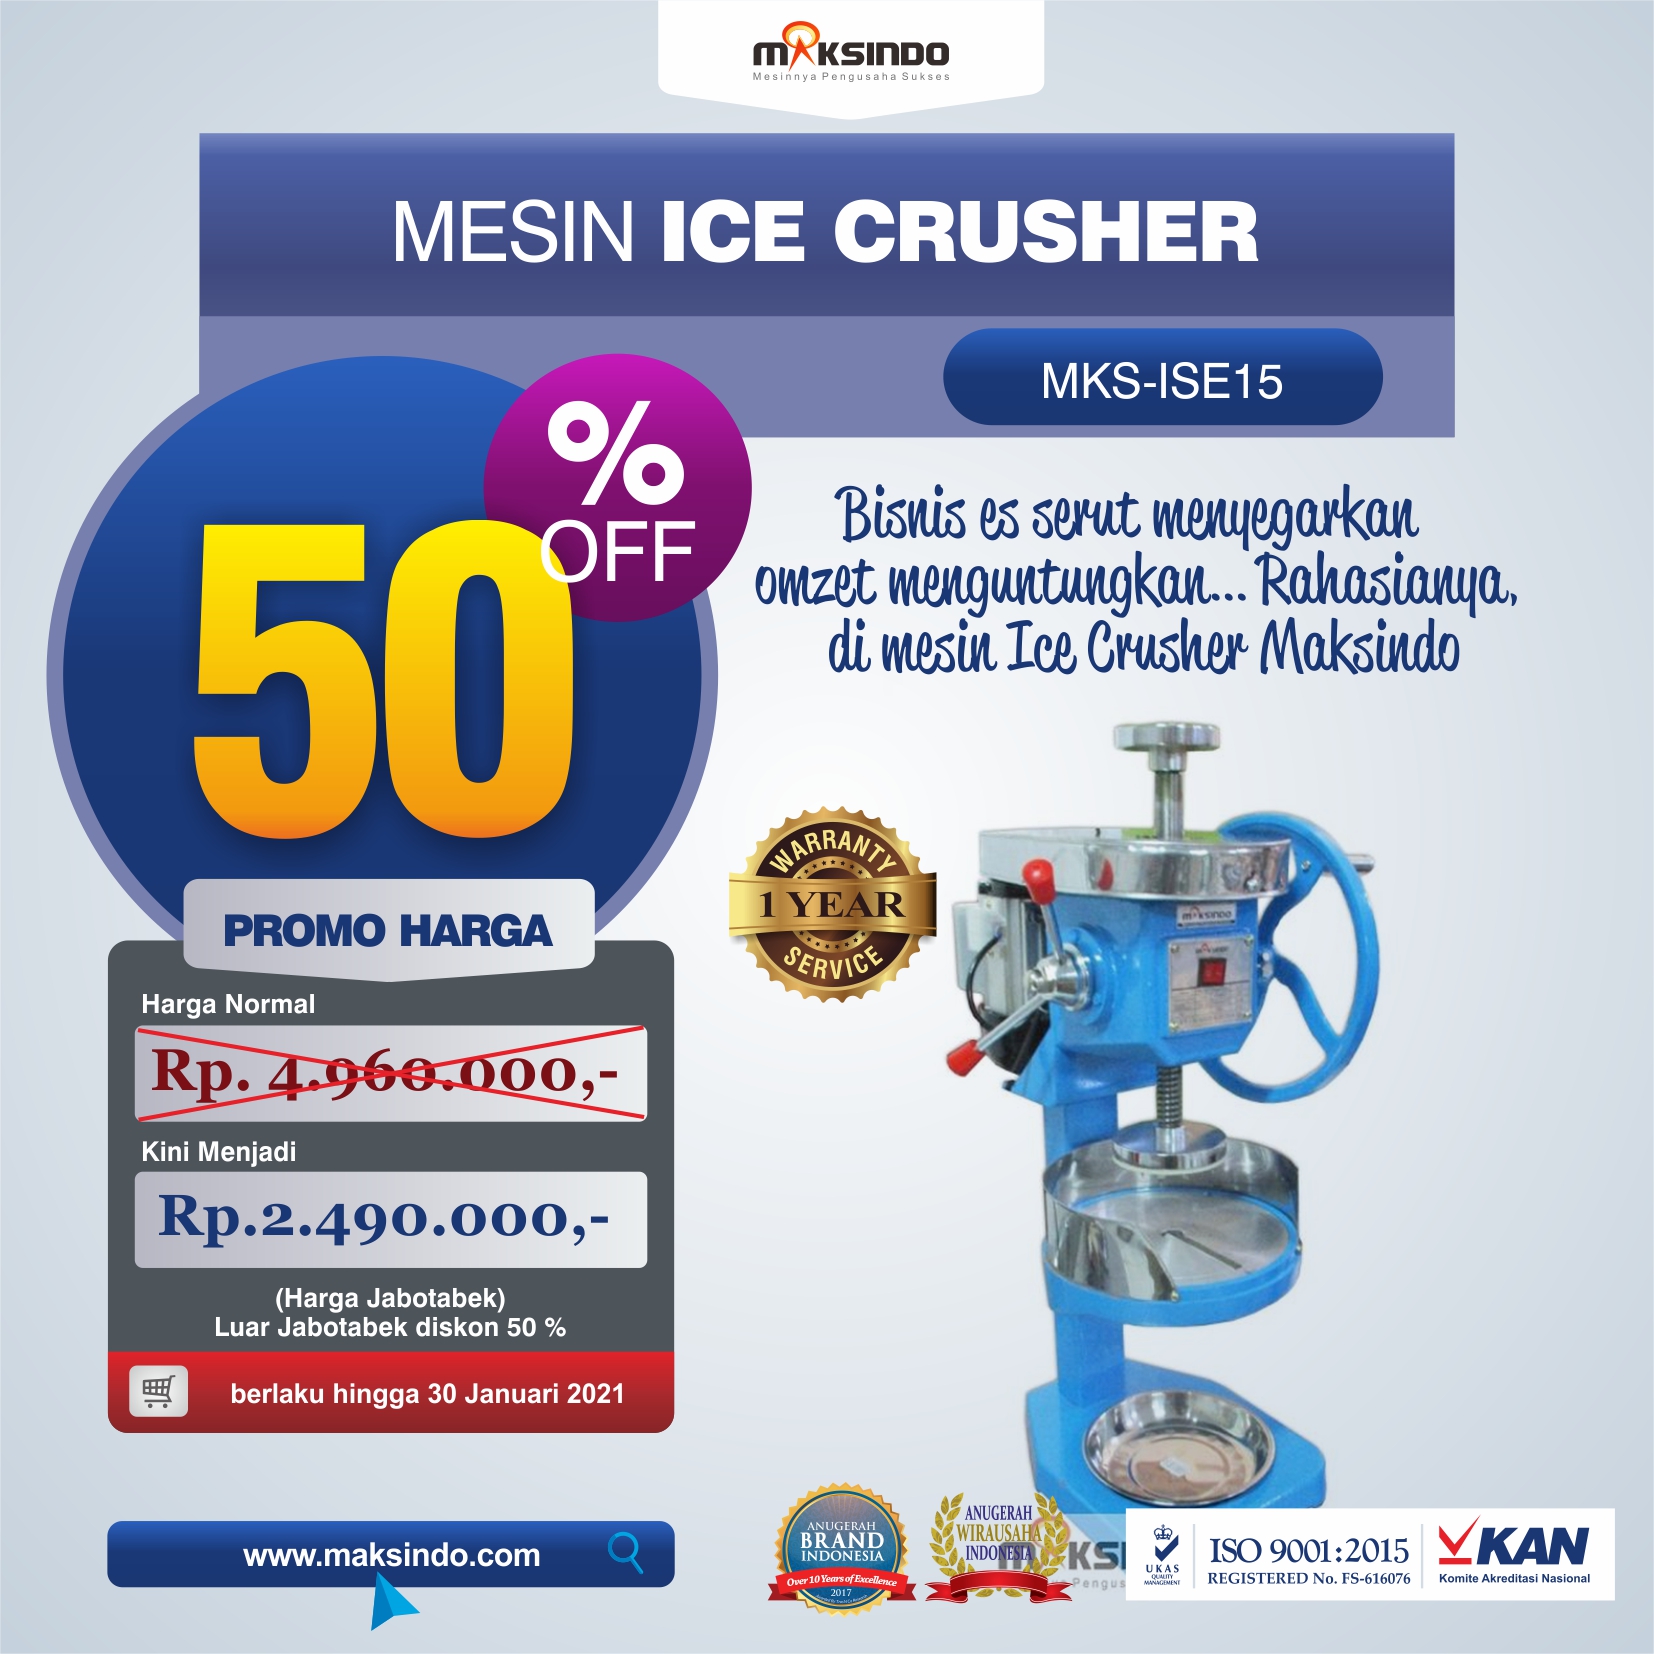 Jual Mesin Ice Crusher MKS-ISE15 di Tangerang